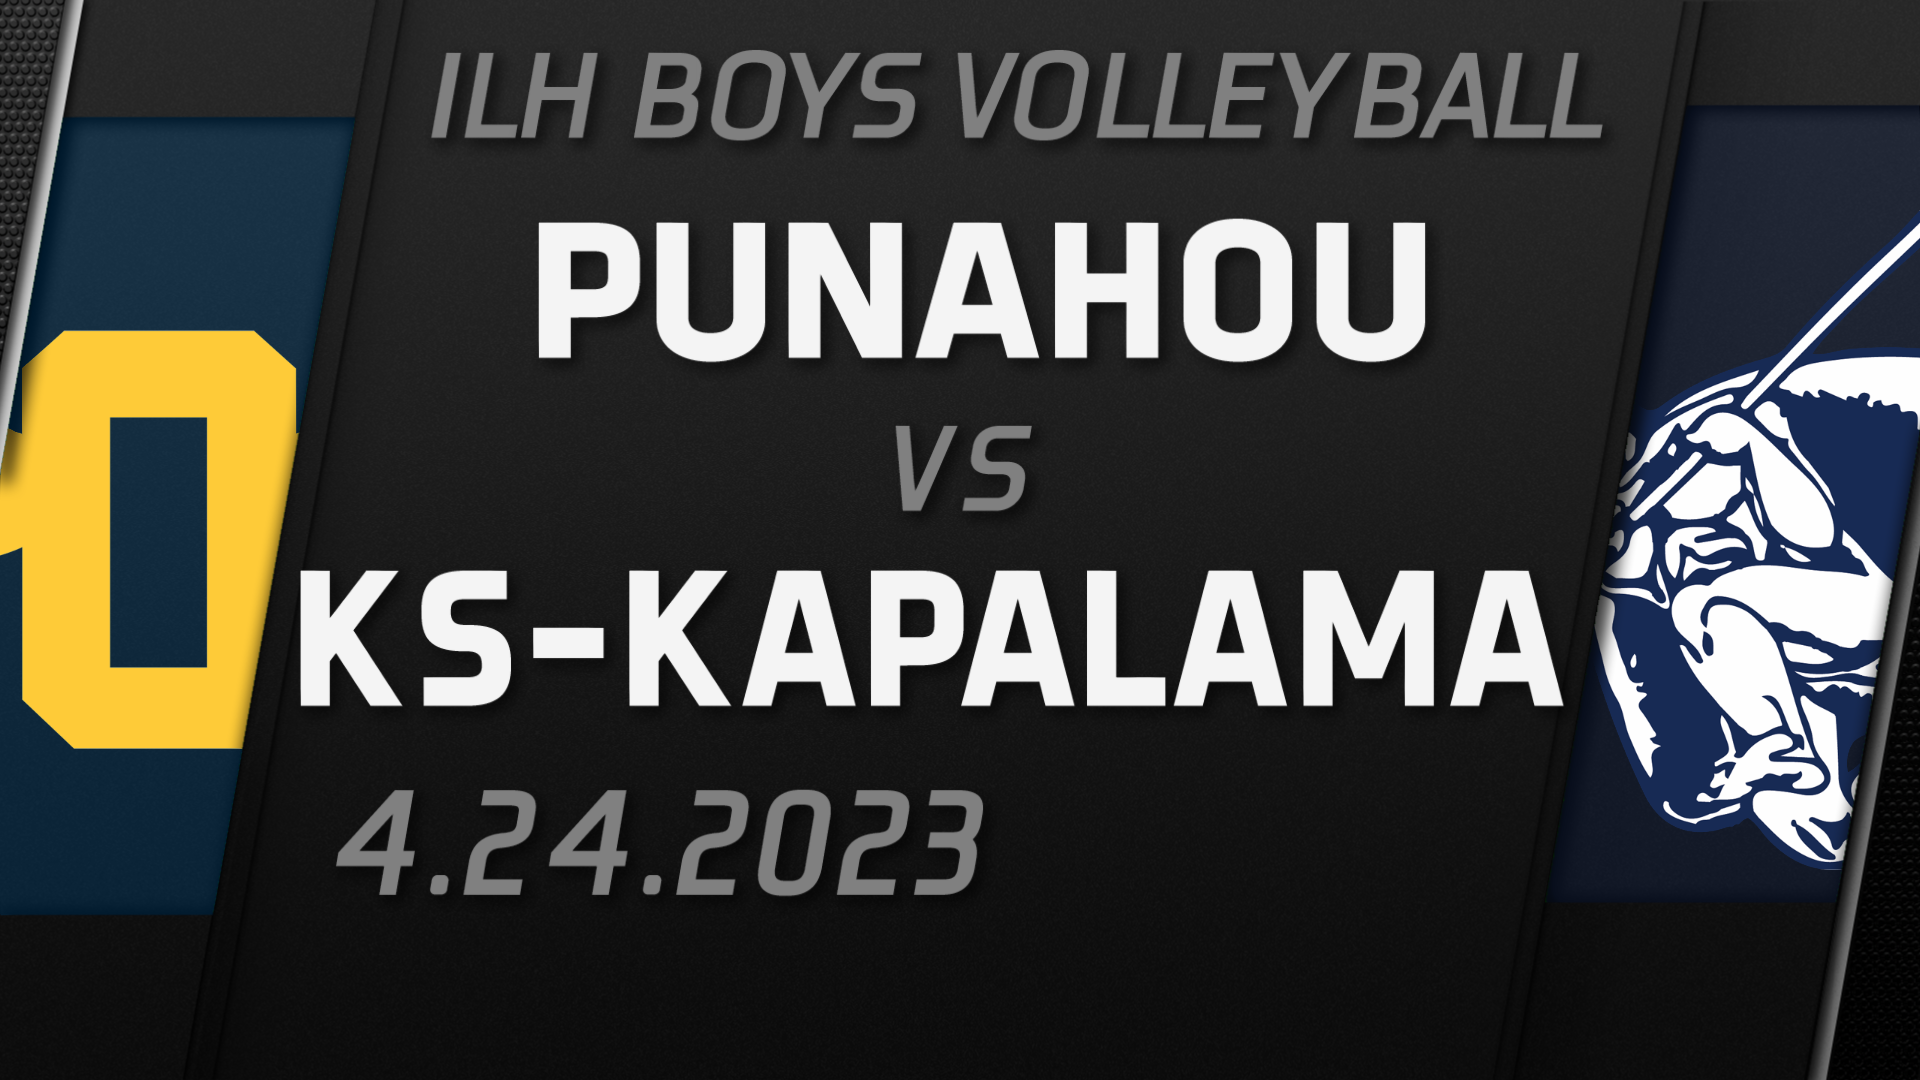 2023 ILH Boys Volleyball Playoff Punahou vs KSKapalama